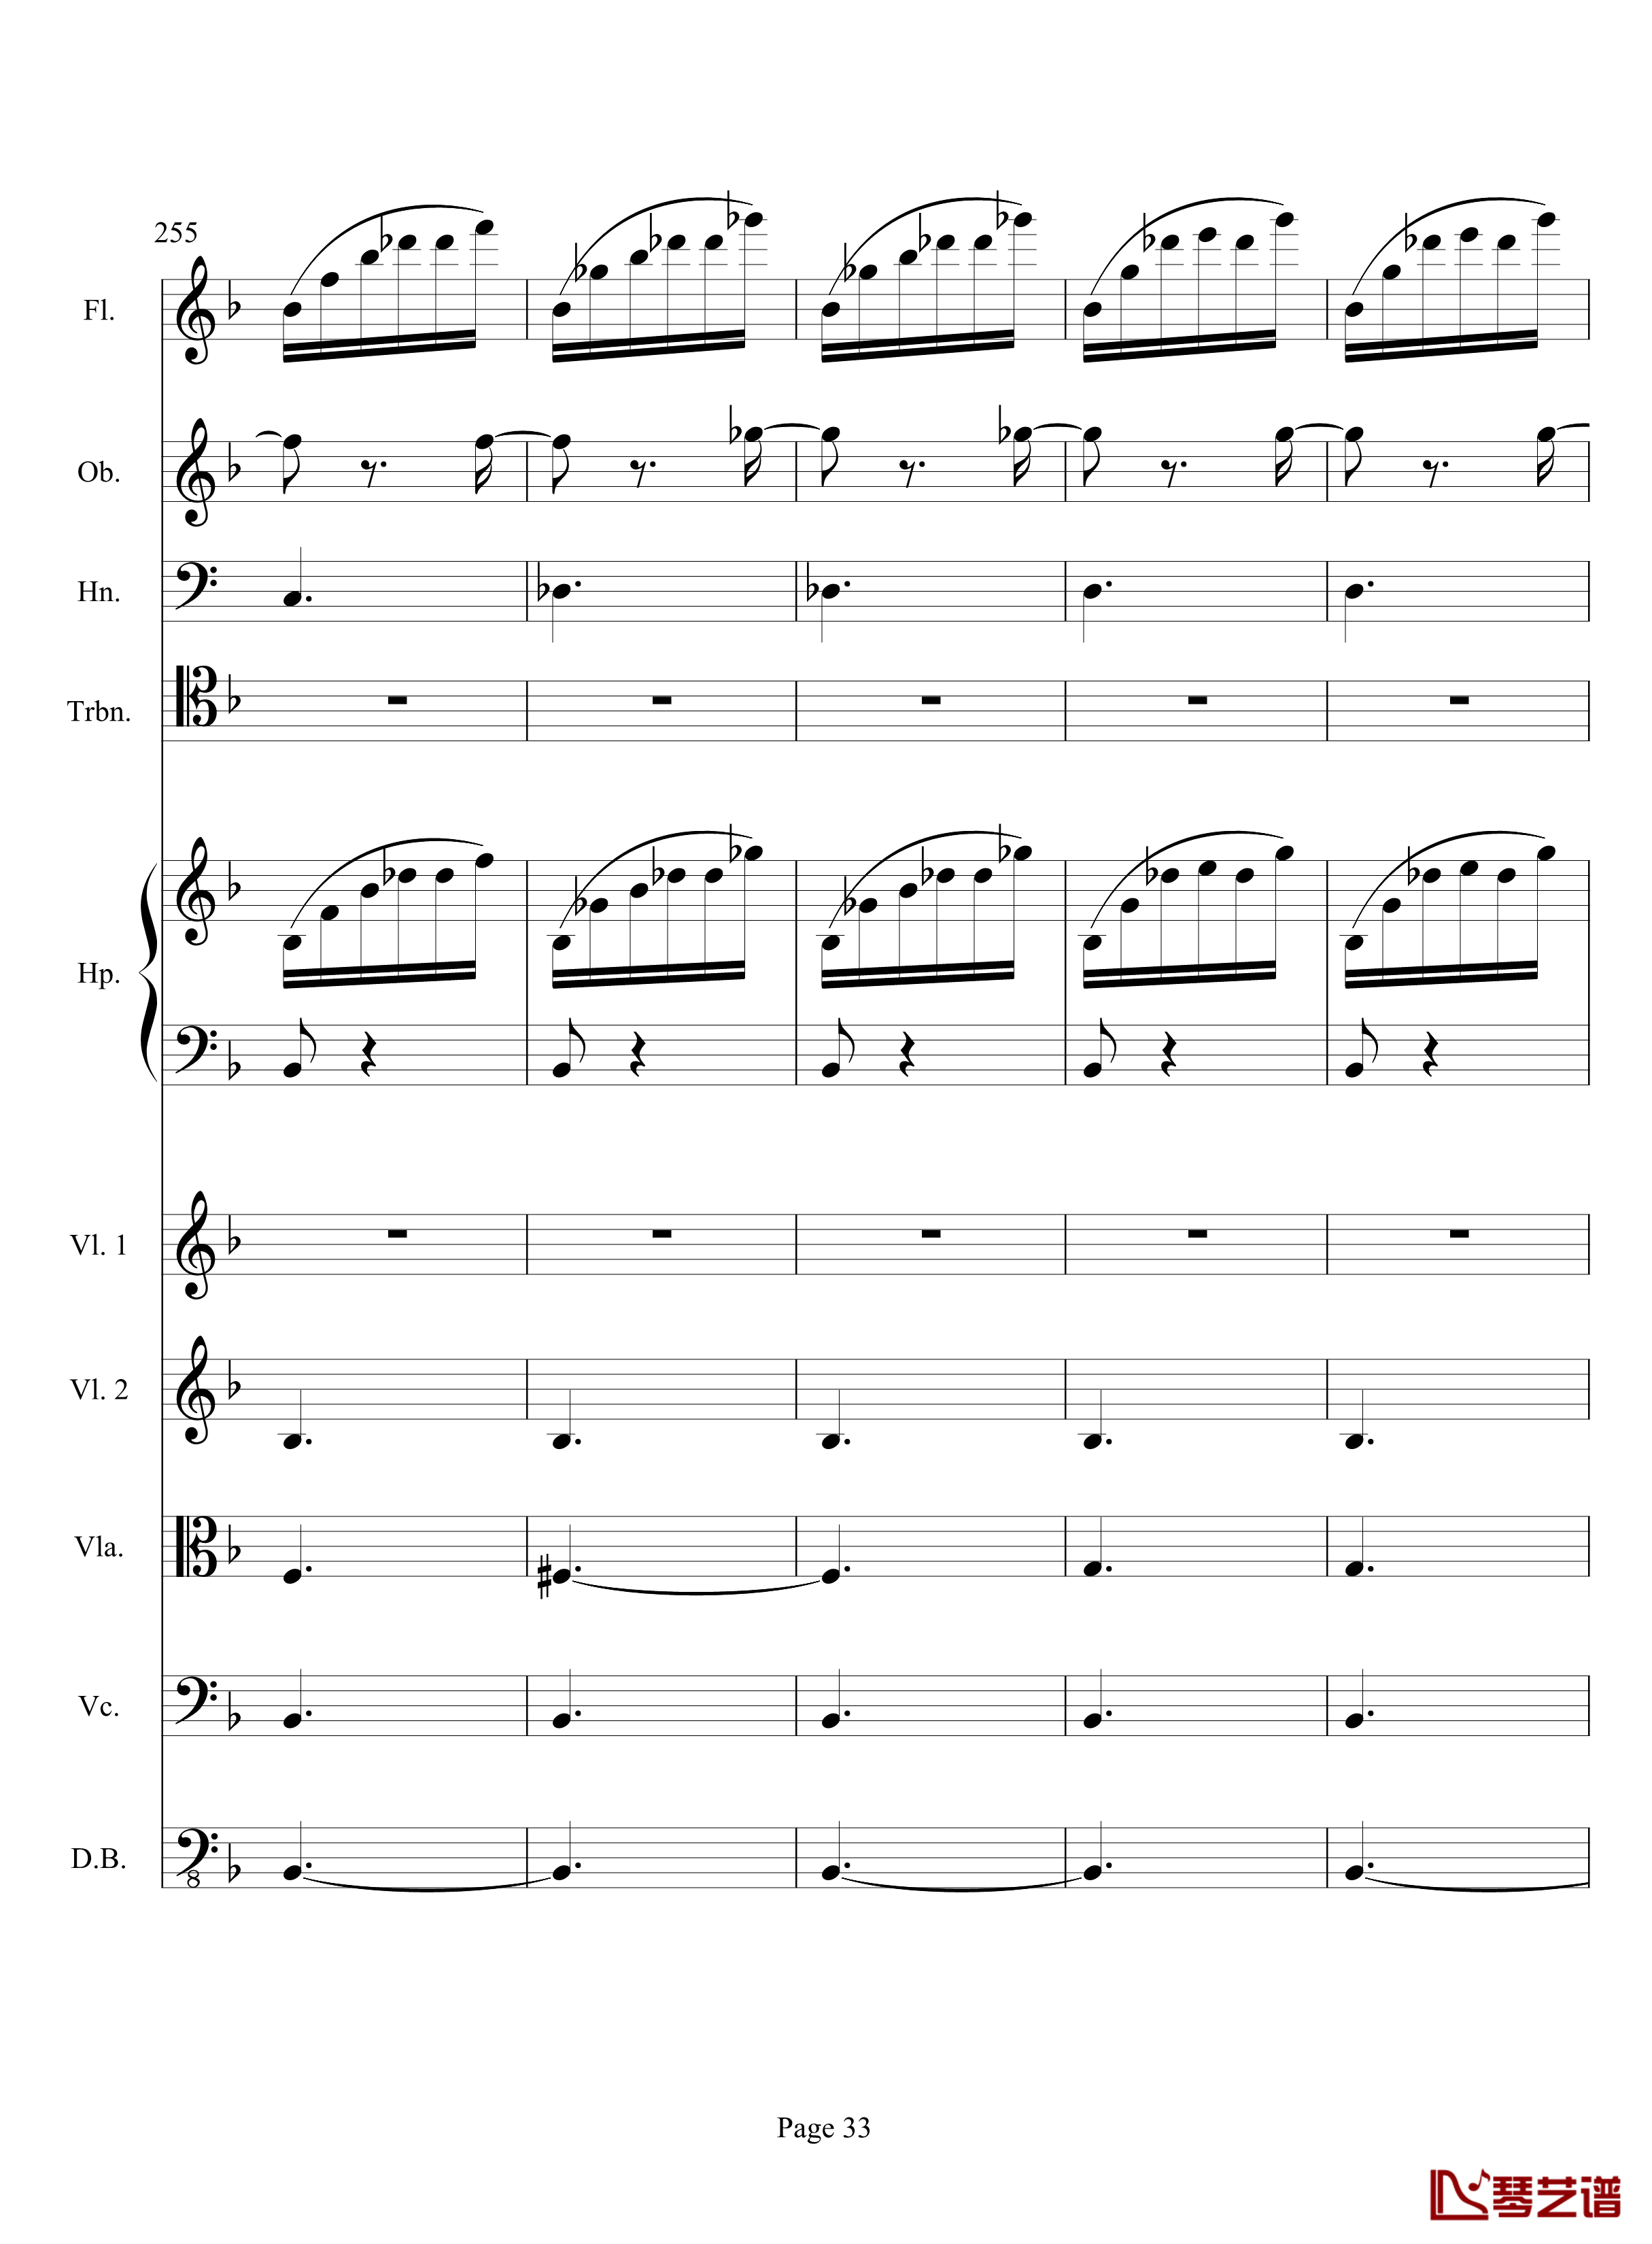 奏鸣曲之交响钢琴谱-第17首-Ⅲ-贝多芬-beethoven33